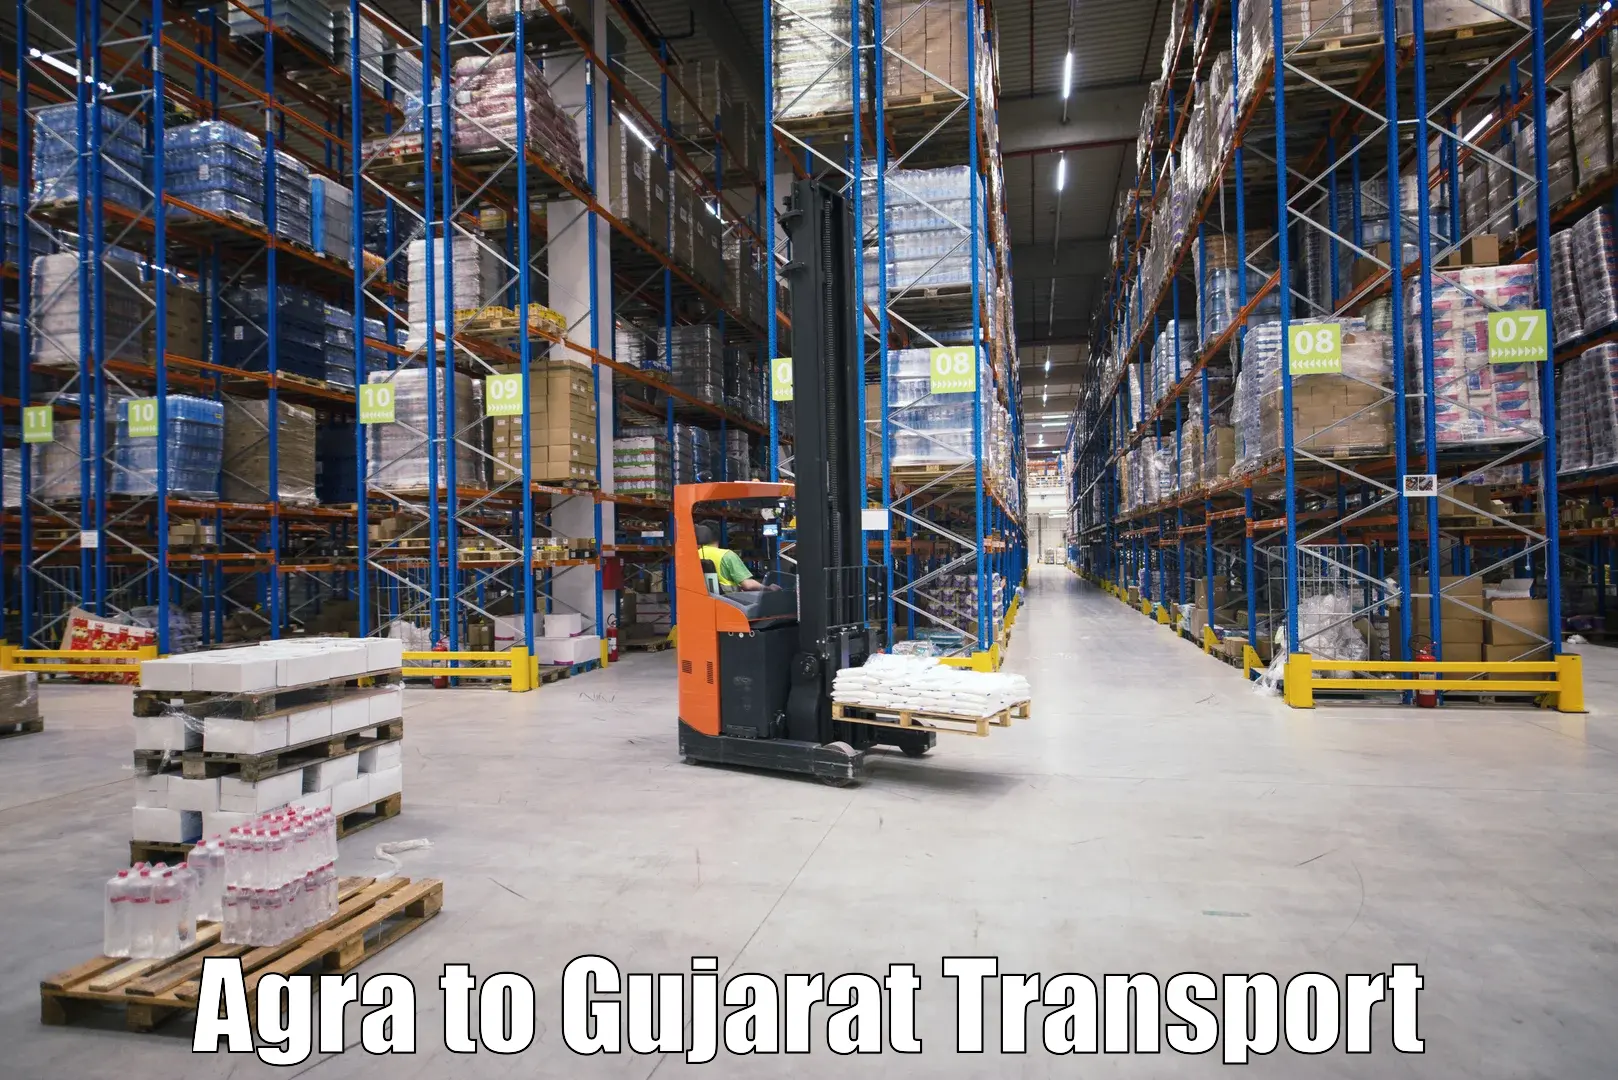 Air cargo transport services Agra to Dahej